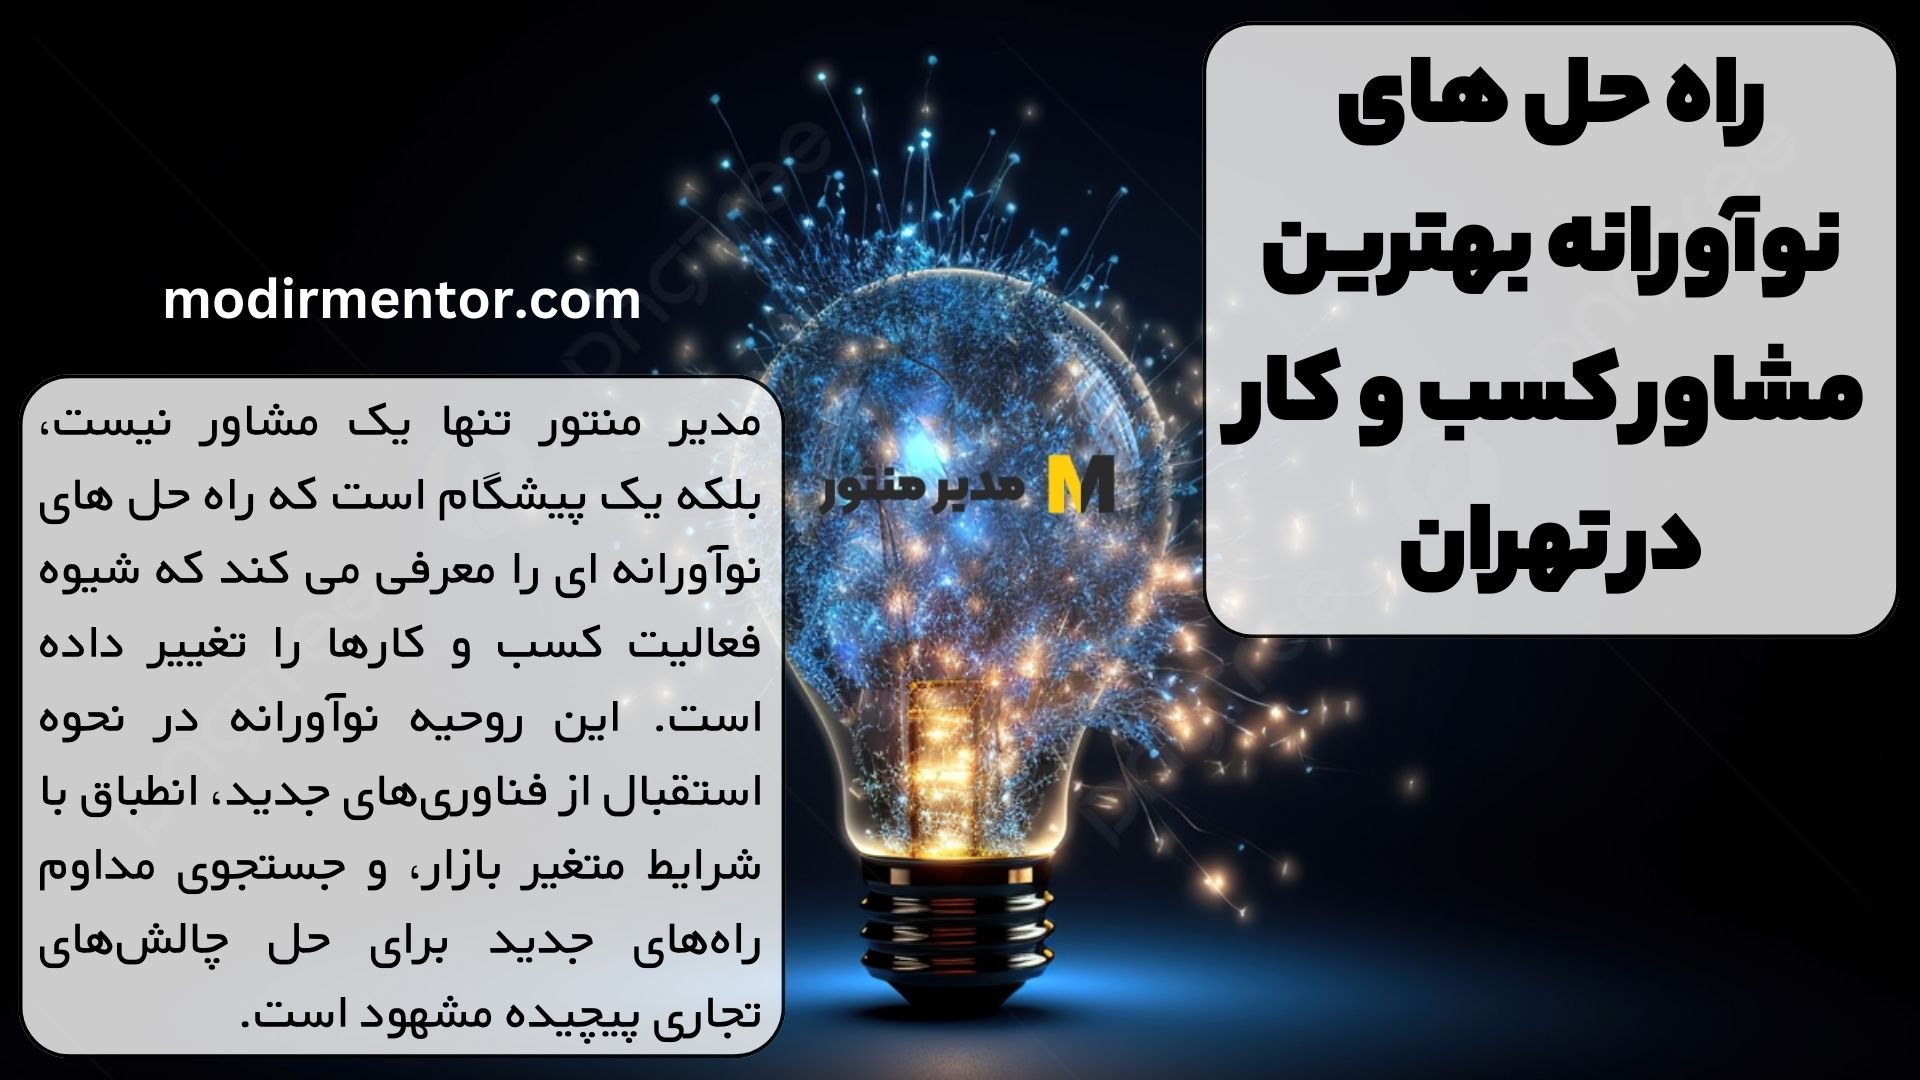 راه حل های نوآورانه بهترین مشاور کسب و کار در تهران